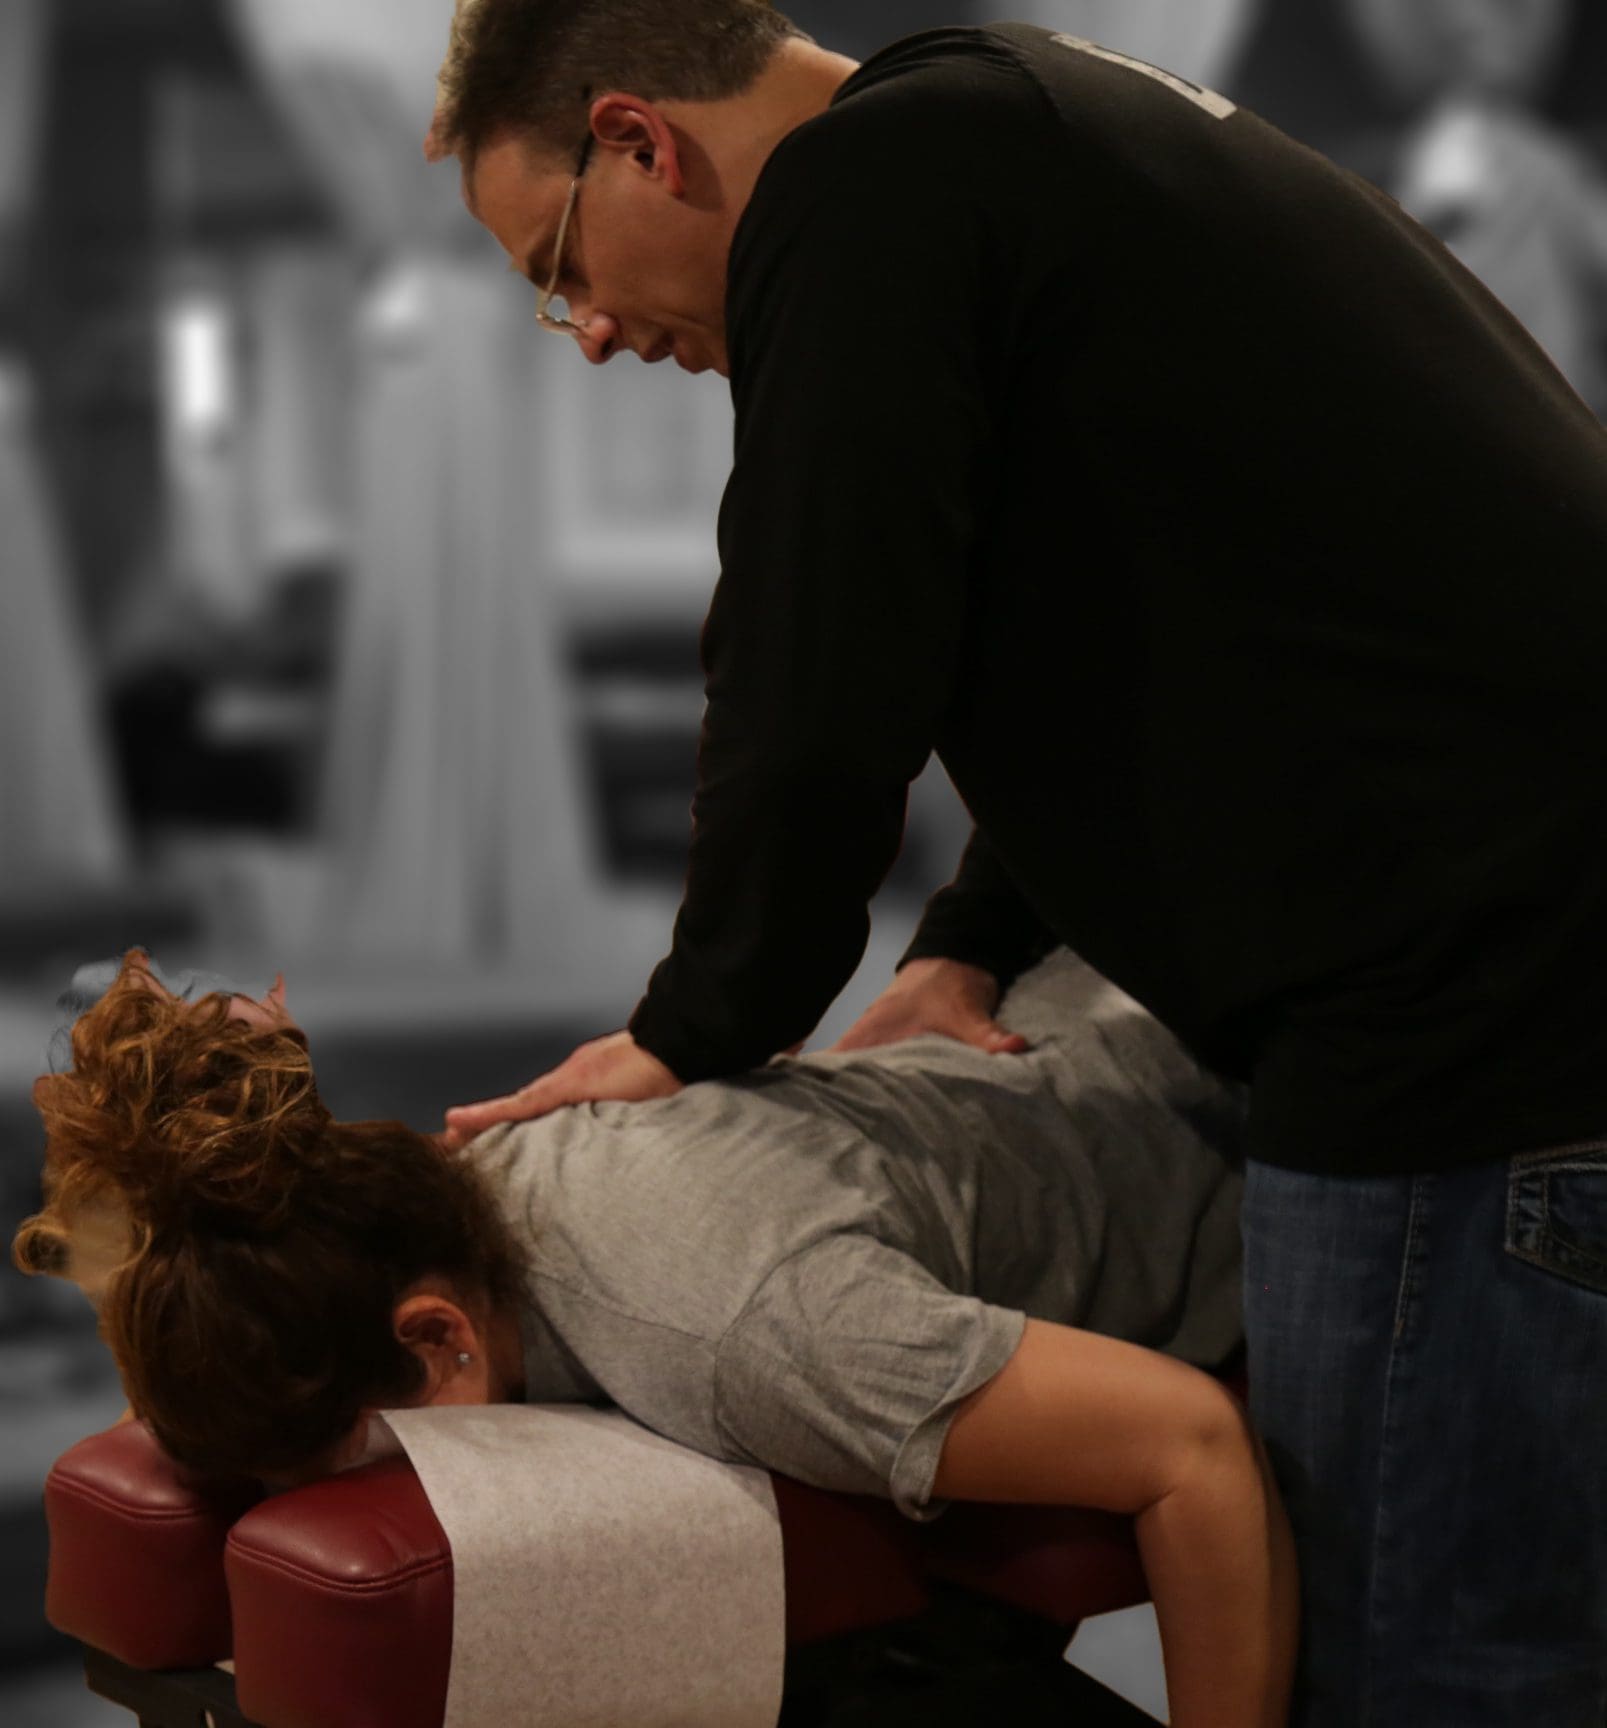 Dr. Jimenez works on patient's back